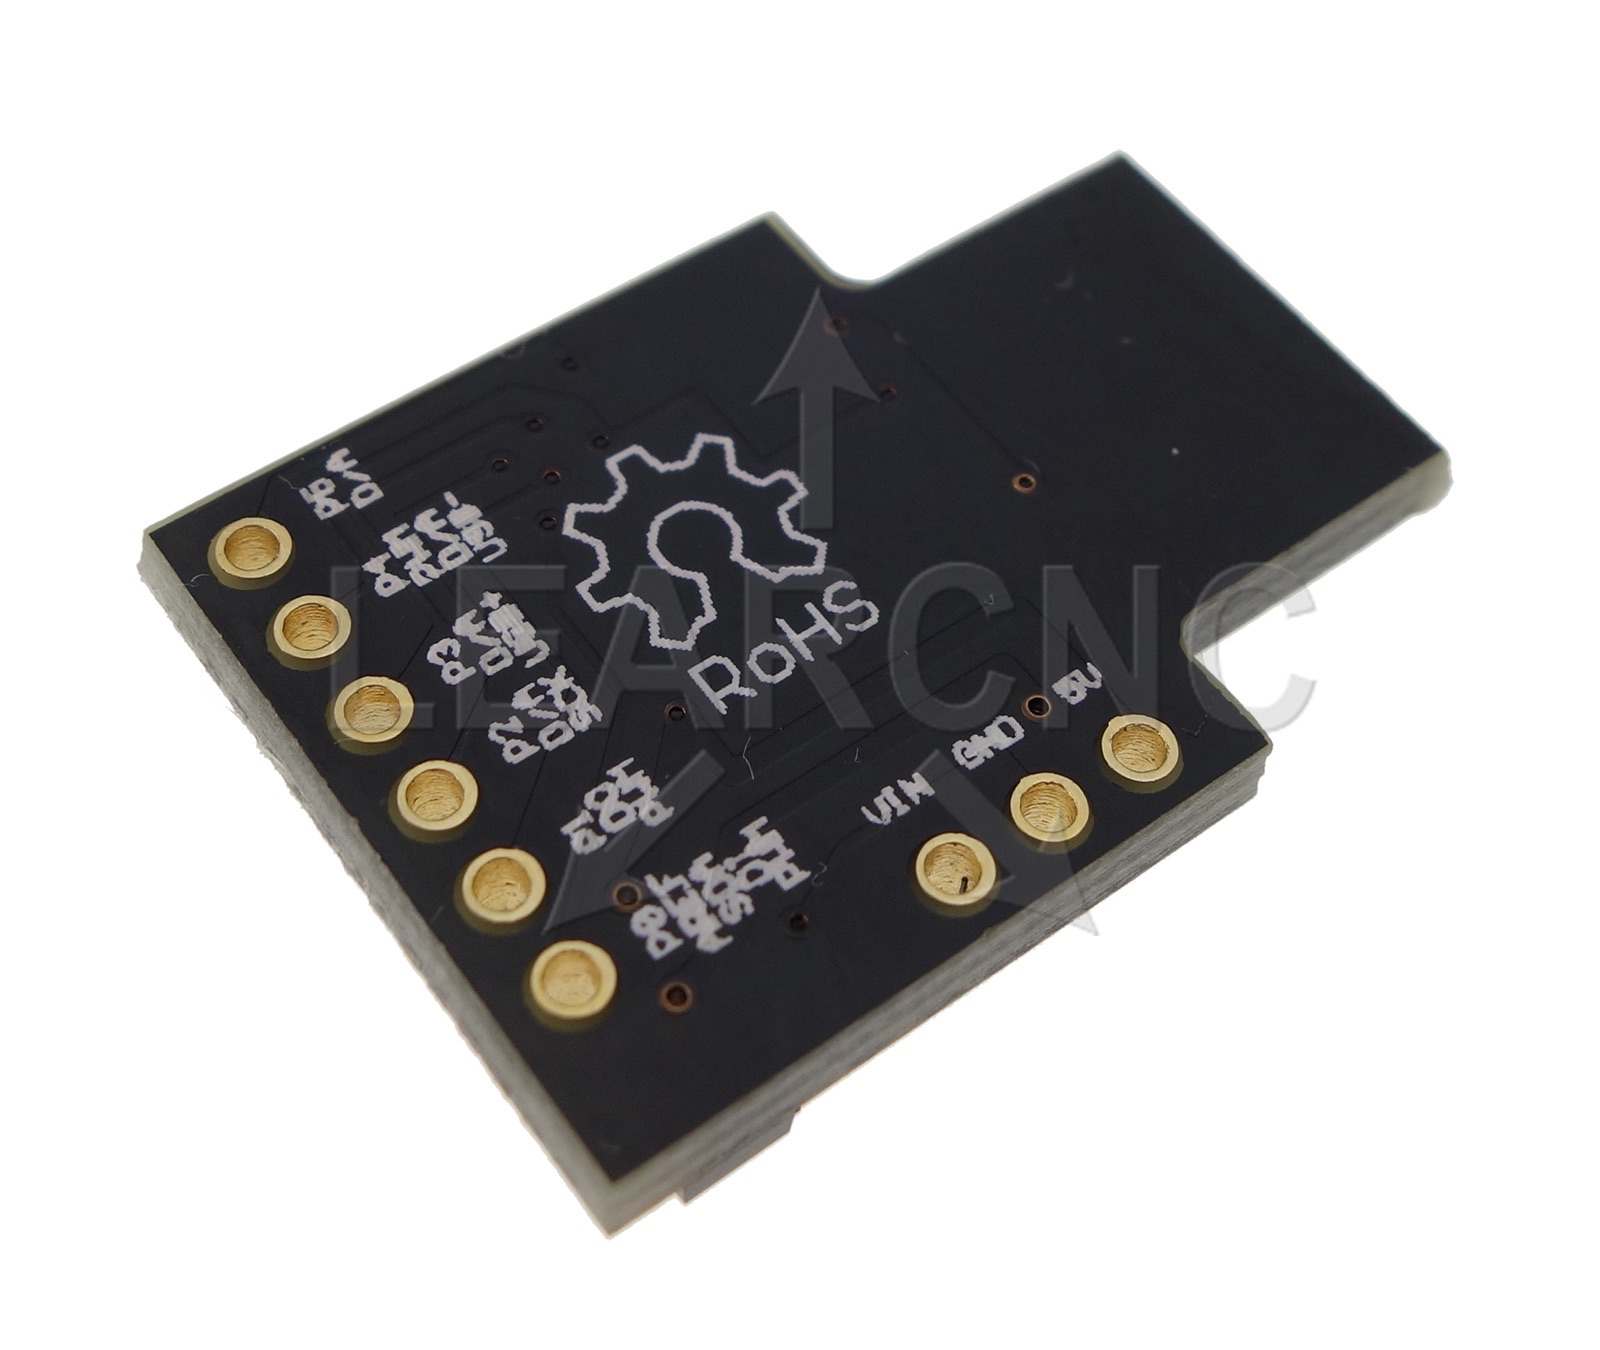 ATTINY85 Digispark / Arduino Compatible Micro USB Development Board ...